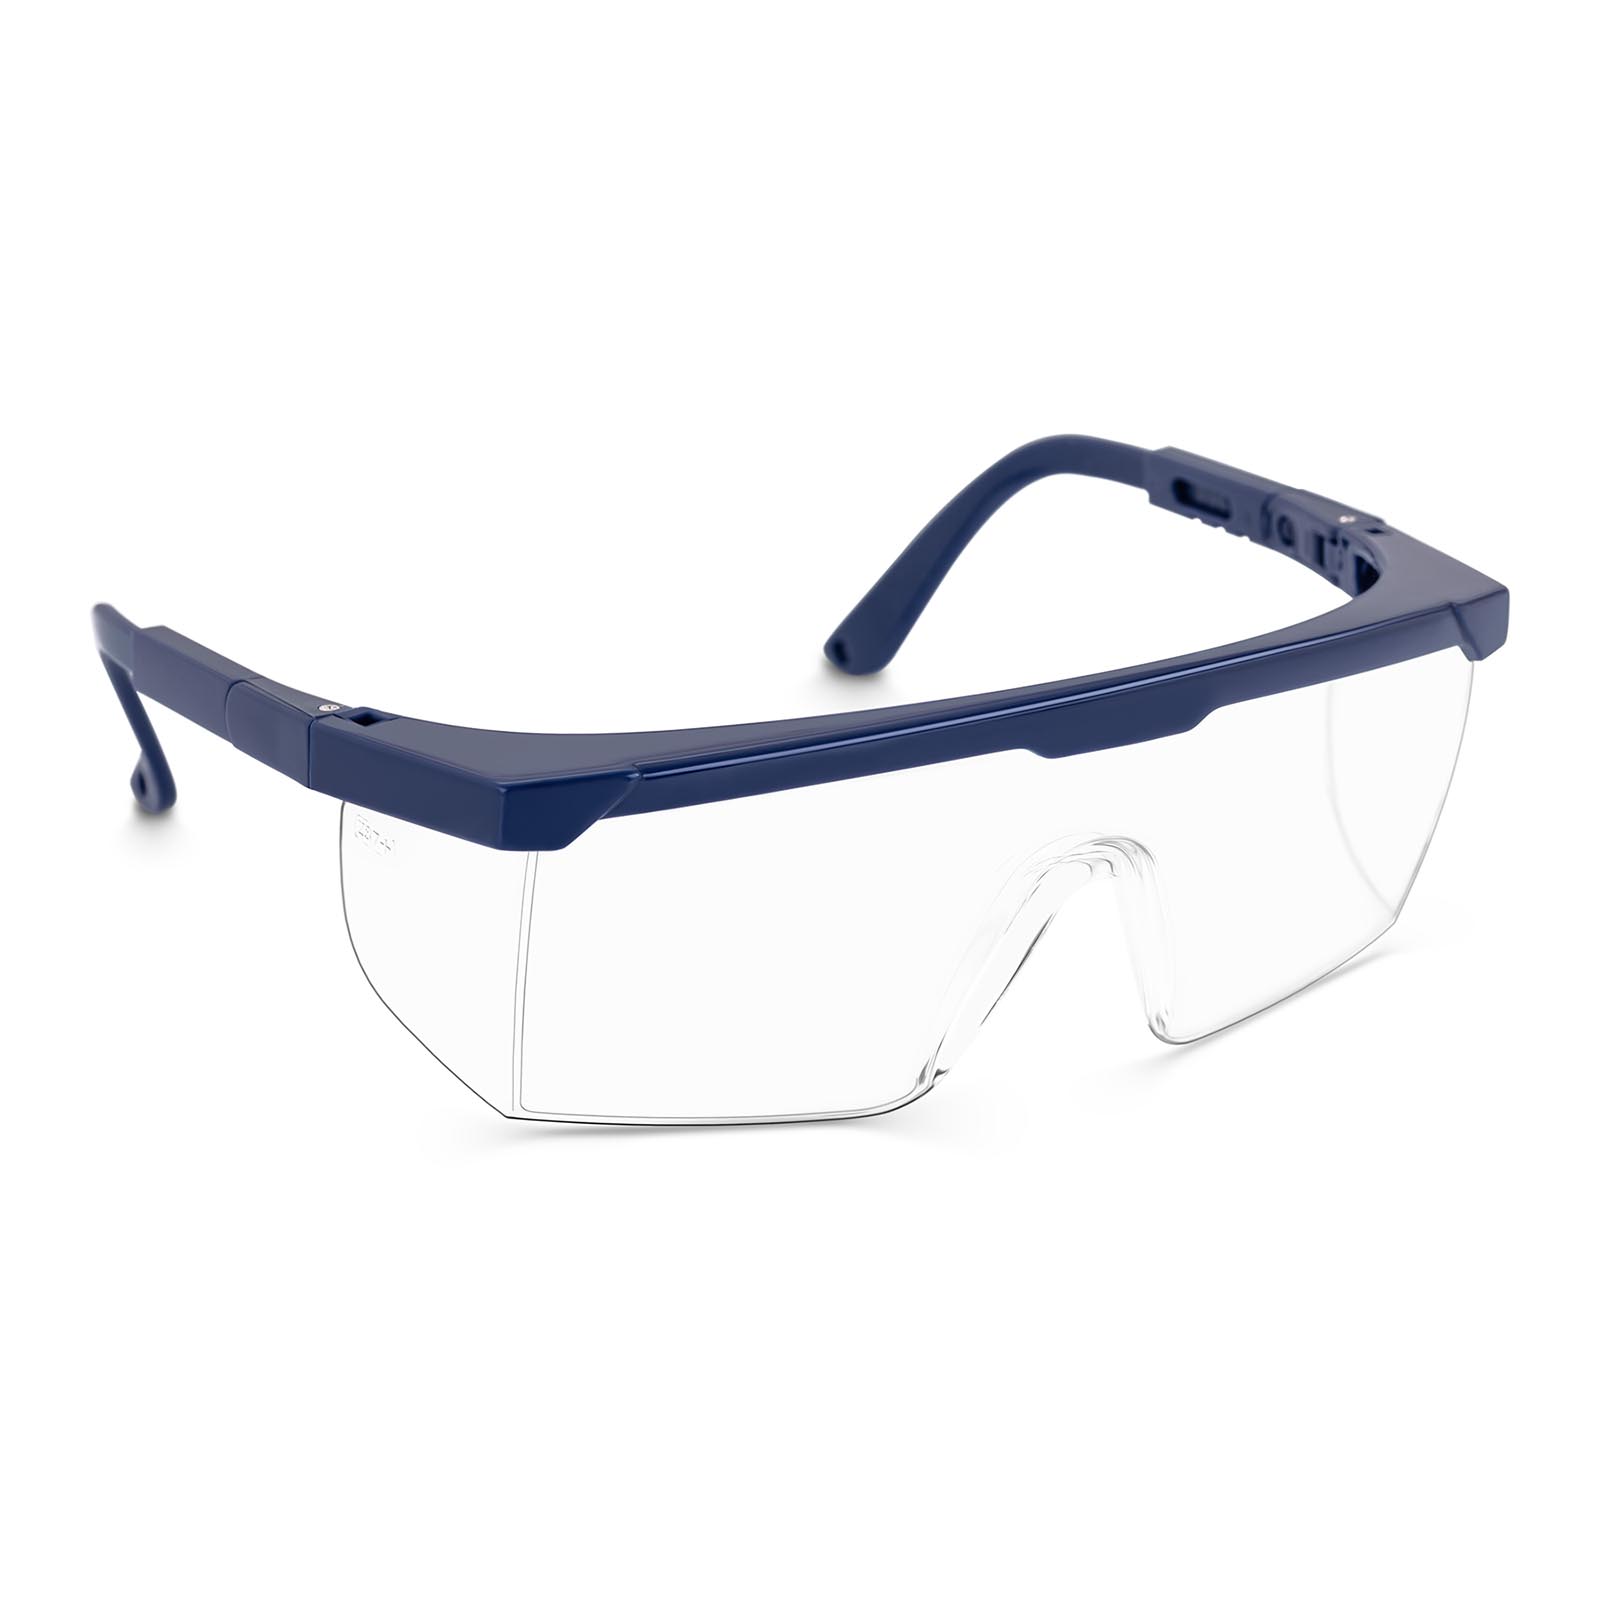 Occhiali protettivi da lavoro TECTOR - Trasparenti - EN166 - Regolabili - 10 pezzi